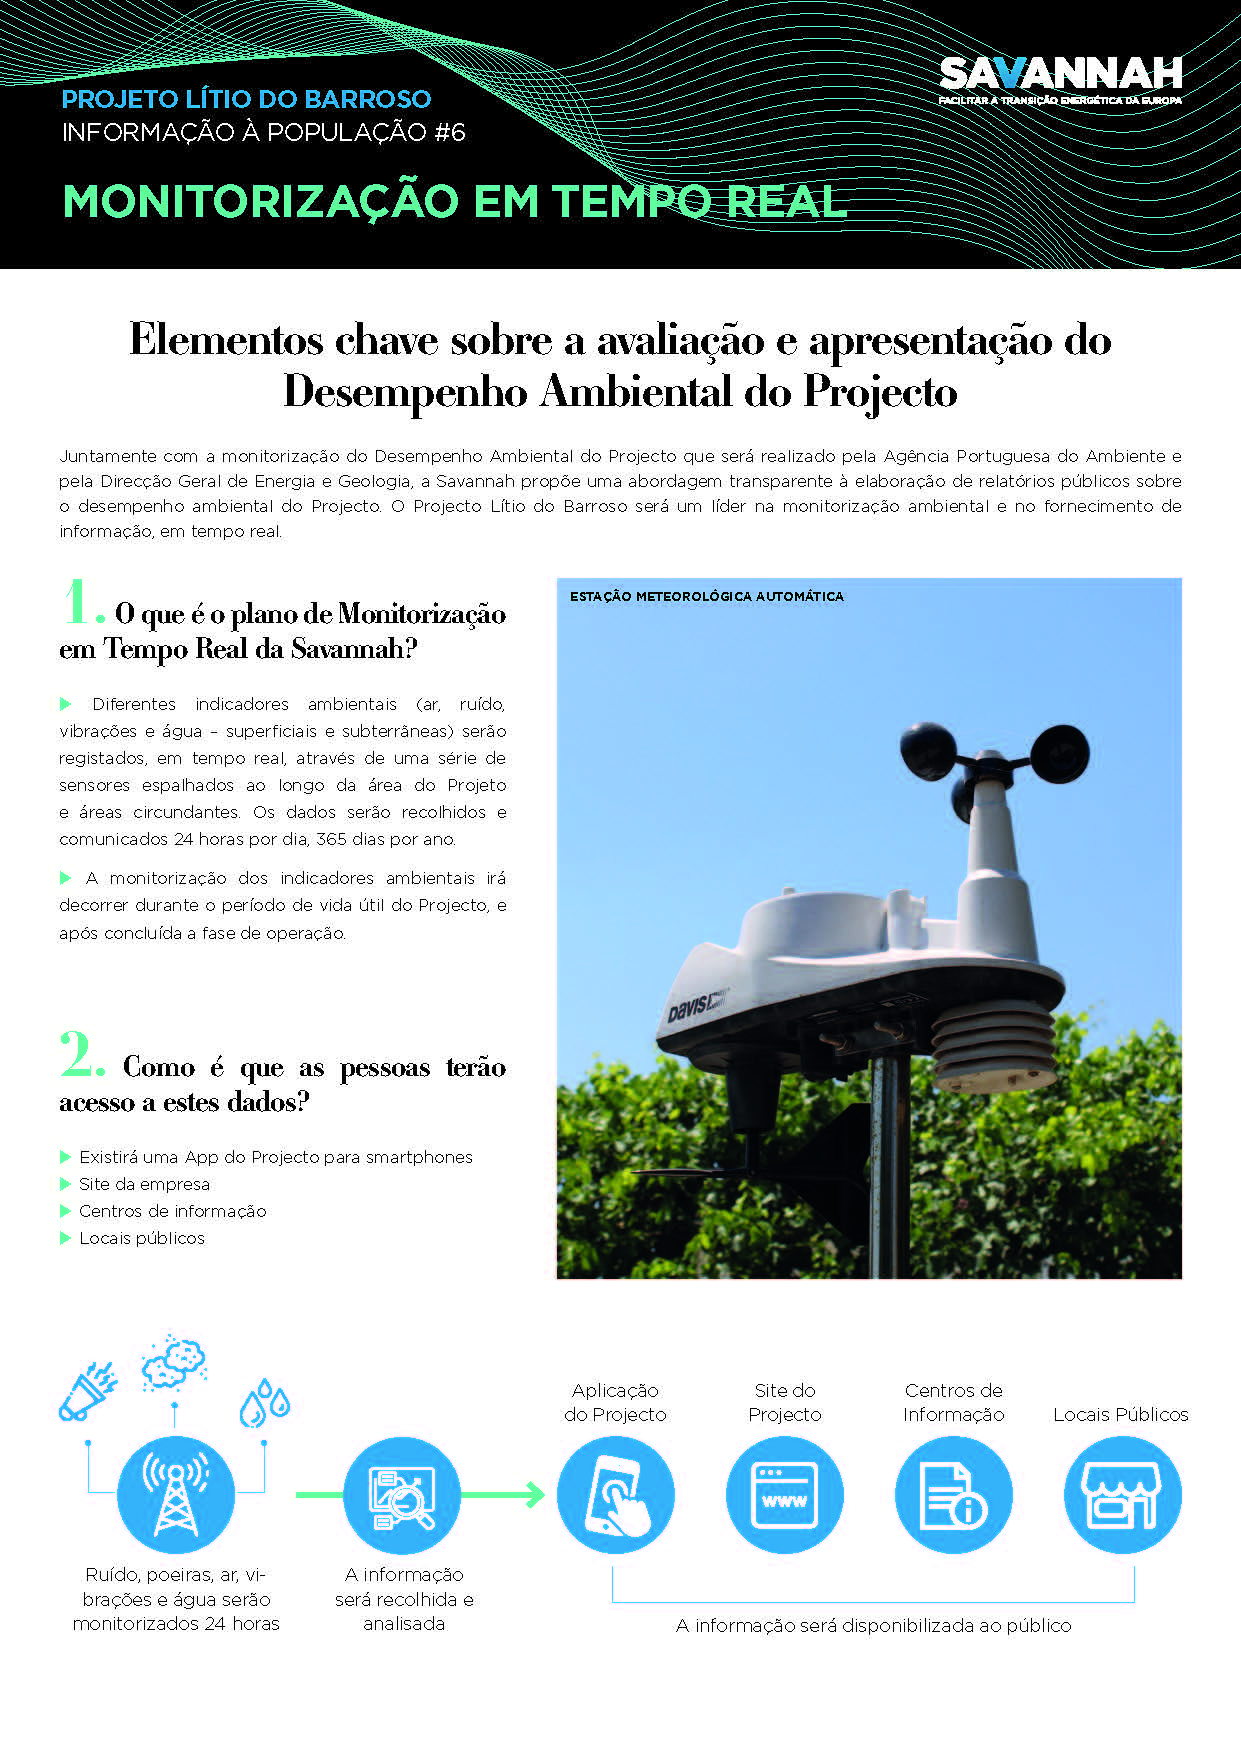 6. Folha Informativa sobre o Projecto Lítio do Barroso - Monitorização em tempo real